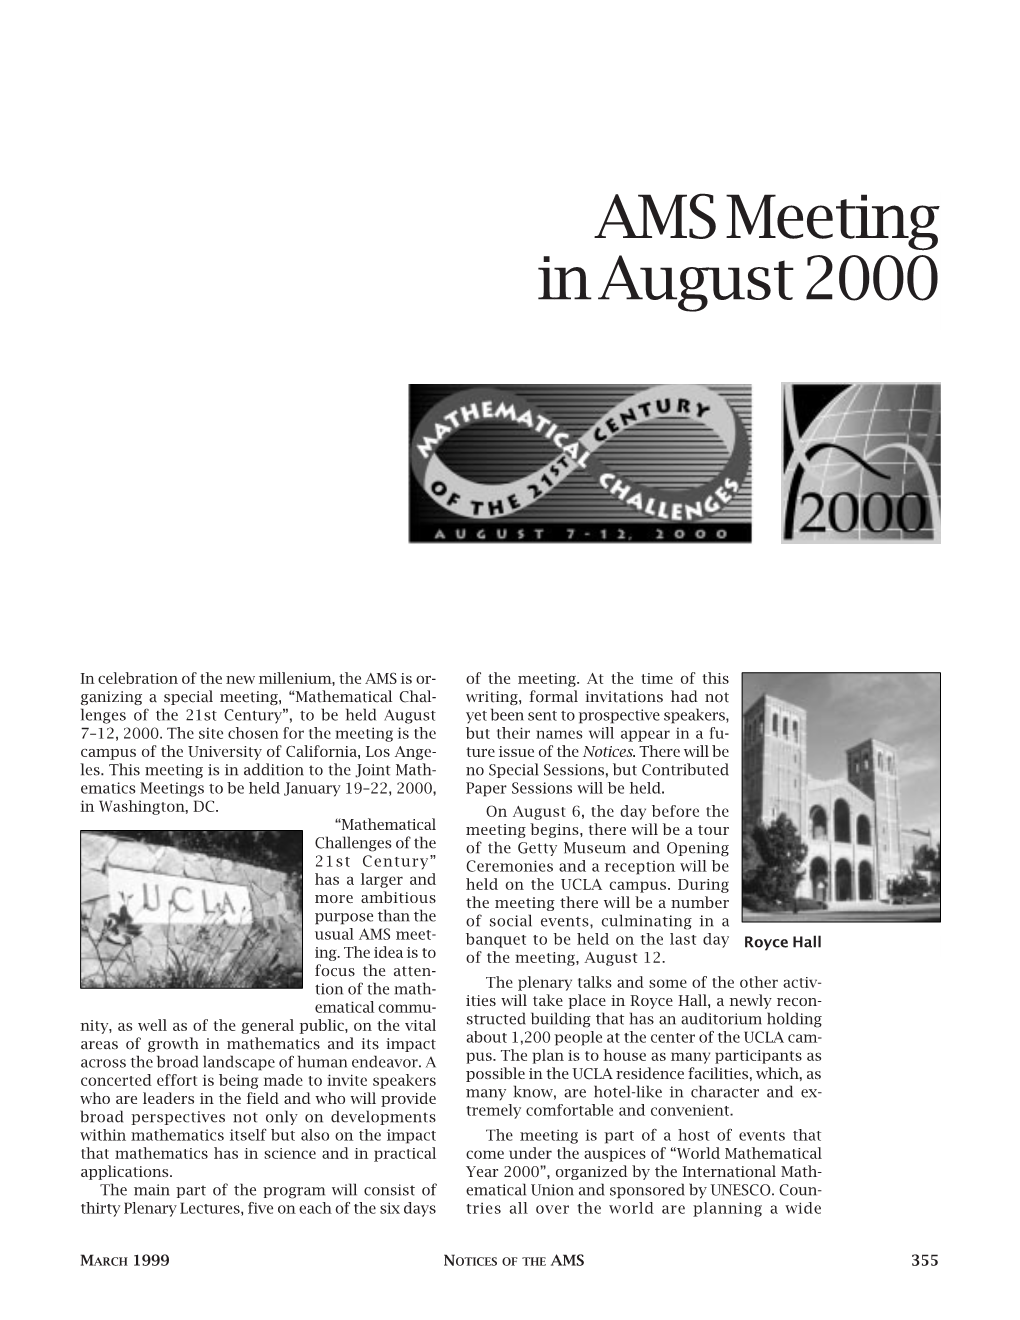 AMS Meeting in August 2000